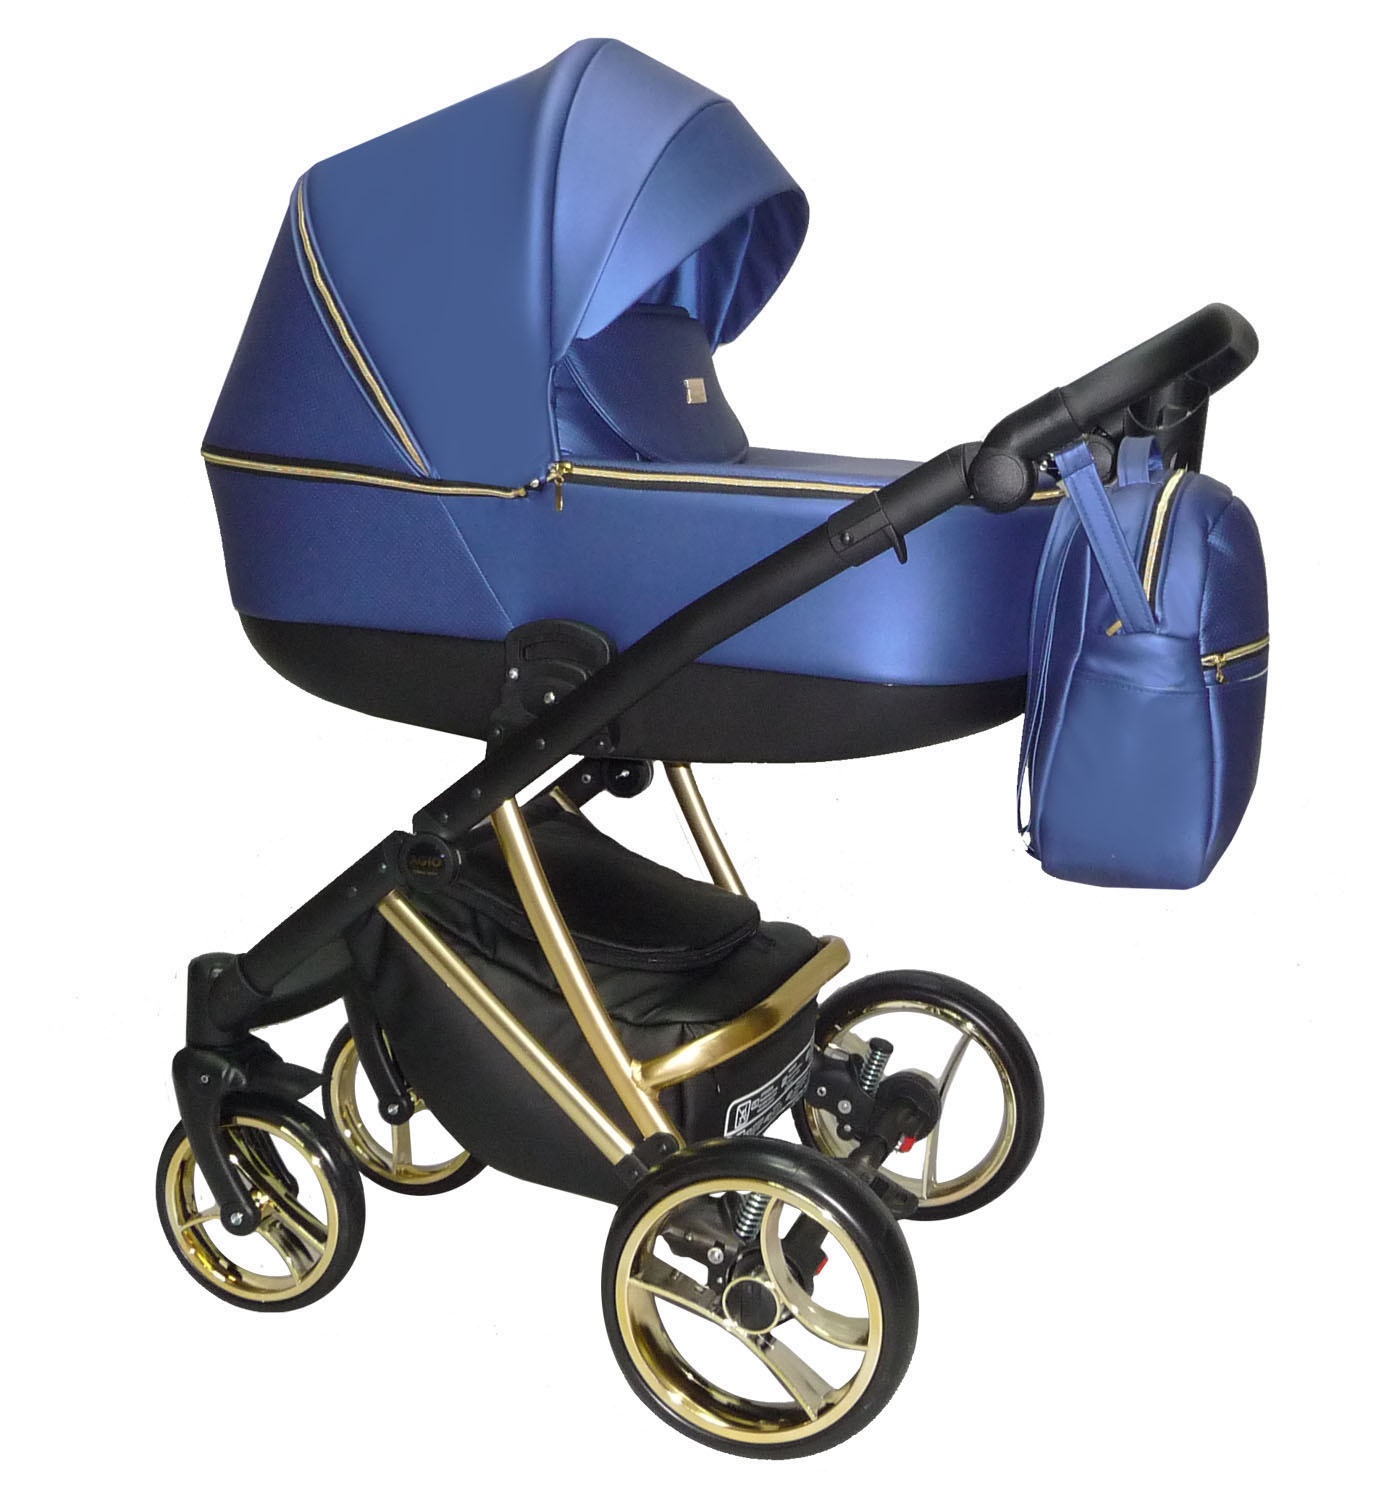 Carro de bebé azul fluo - Agix - El mimo de mama